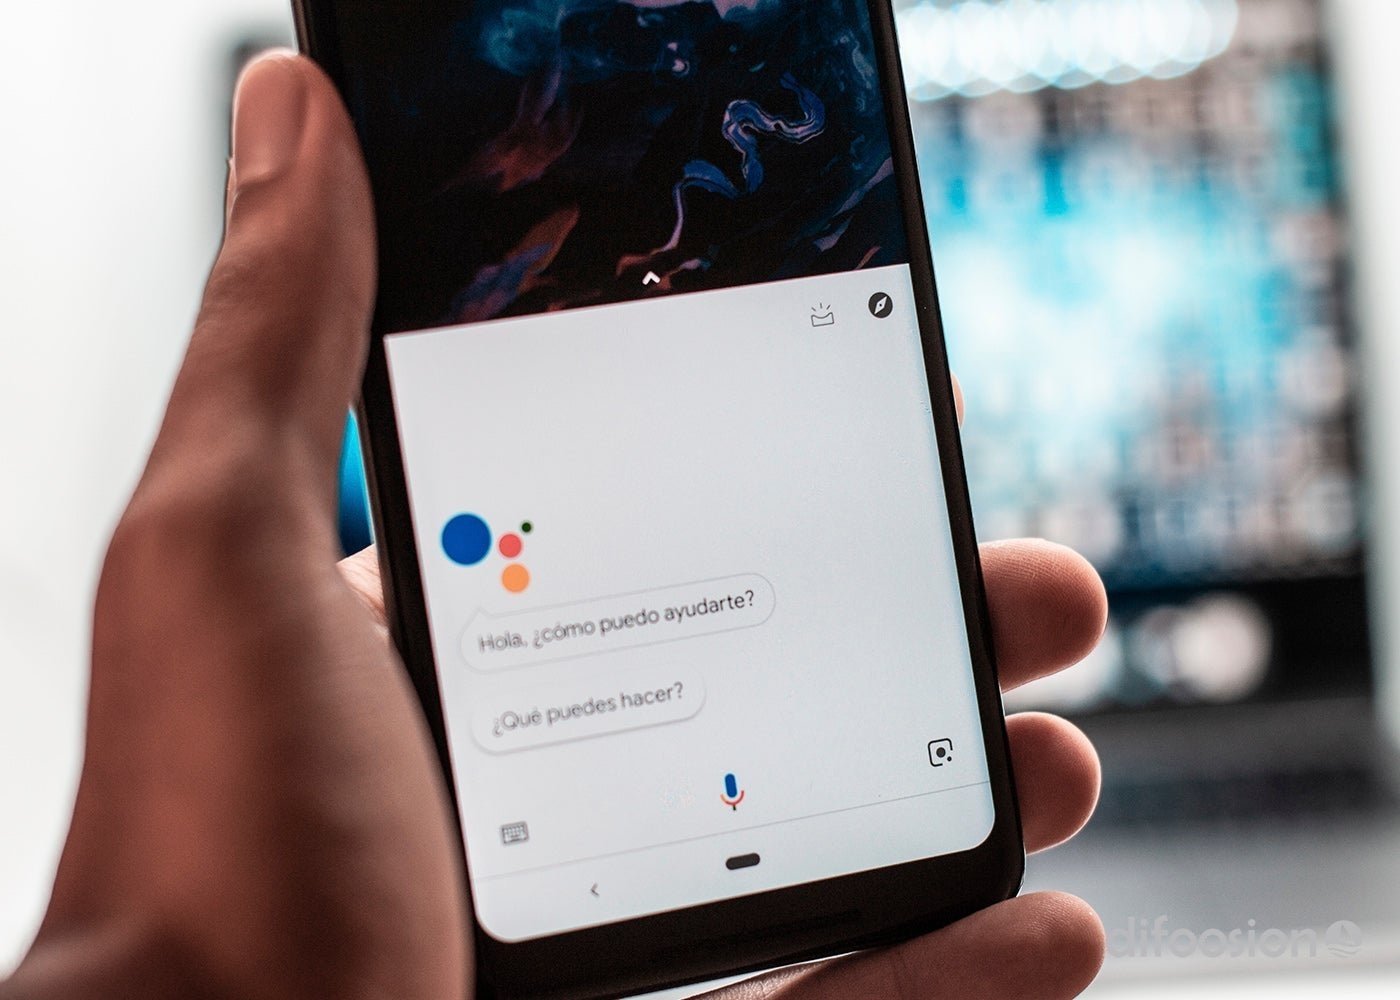 Personalizar Google Assistant, la idea no tan genial de algunos fabricantes Android